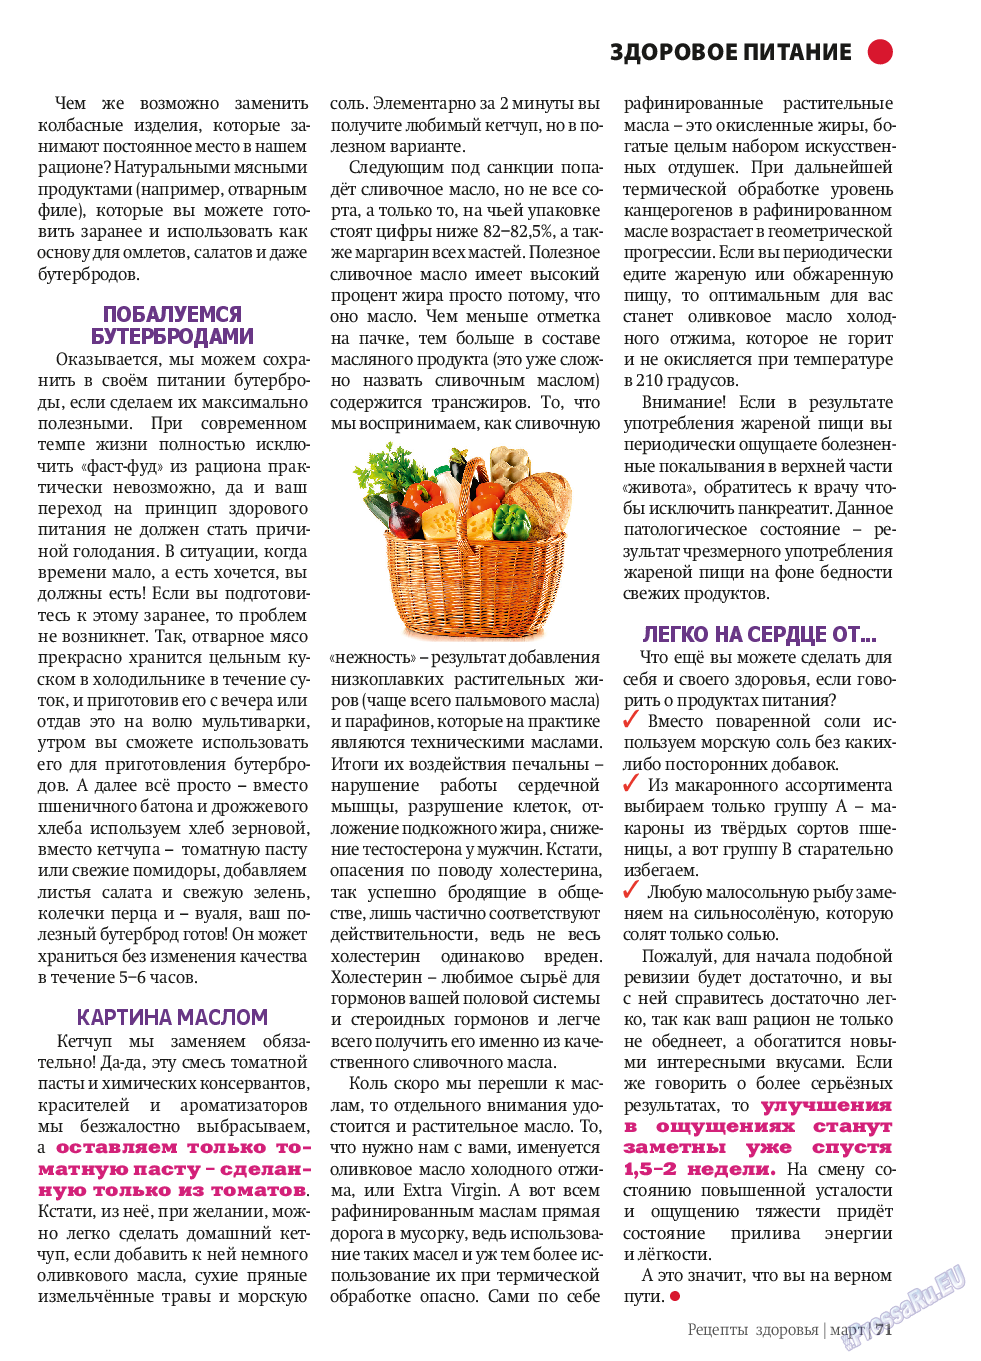 Рецепты здоровья, журнал. 2014 №58 стр.71